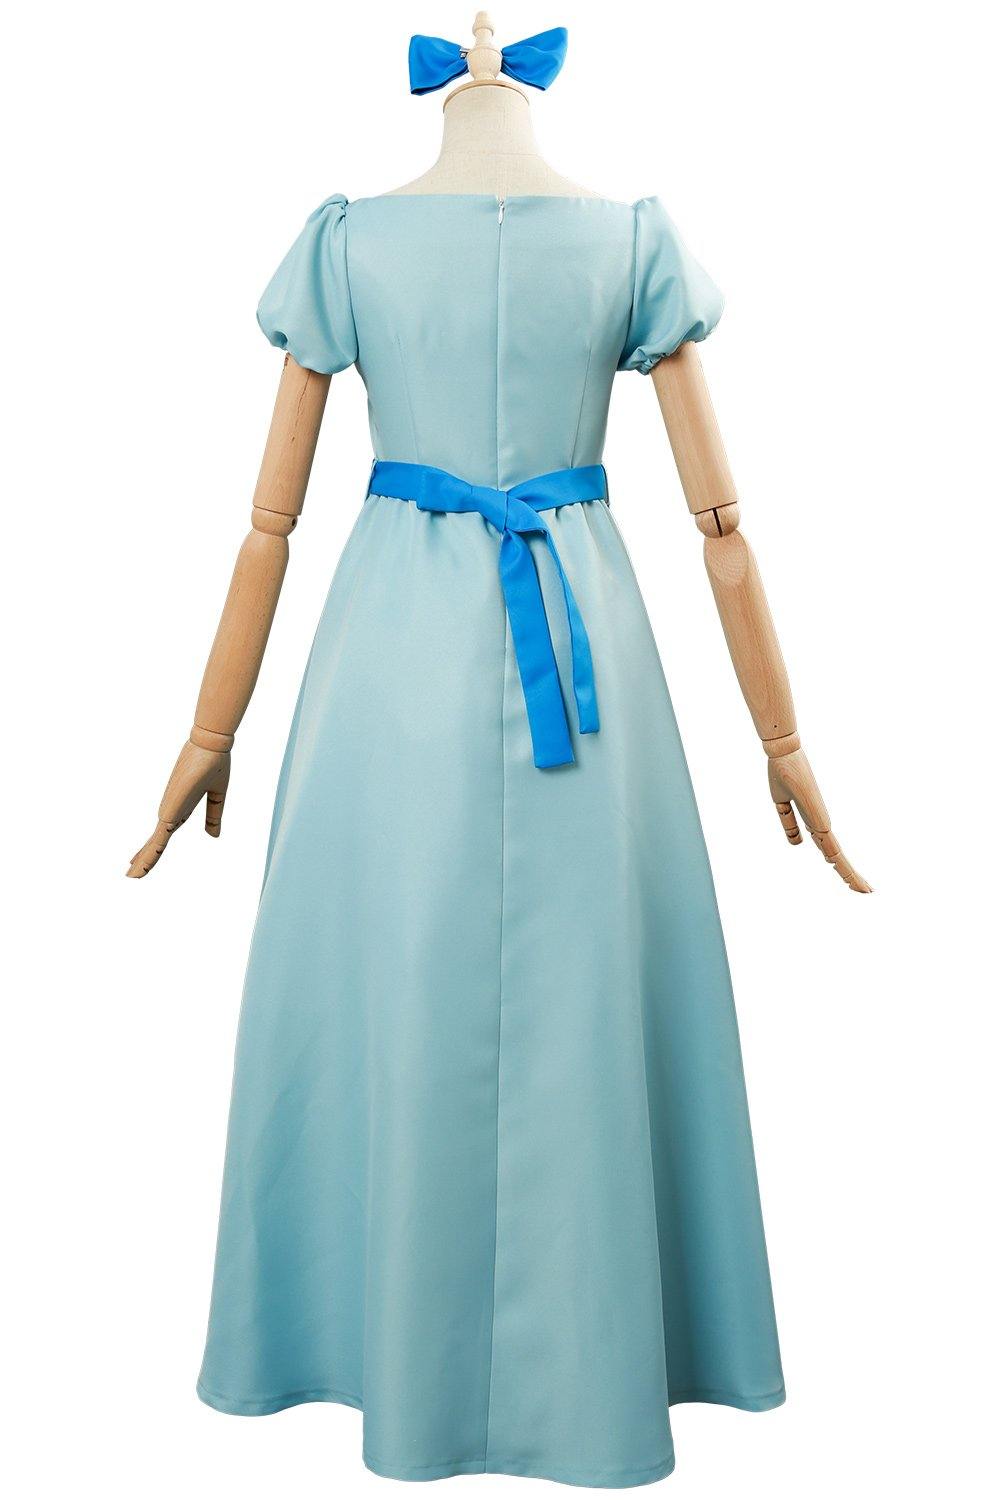 Nimmerland Peter Pan Wendy Kleid Cosplay Kostüm Blau - cosplaycartde